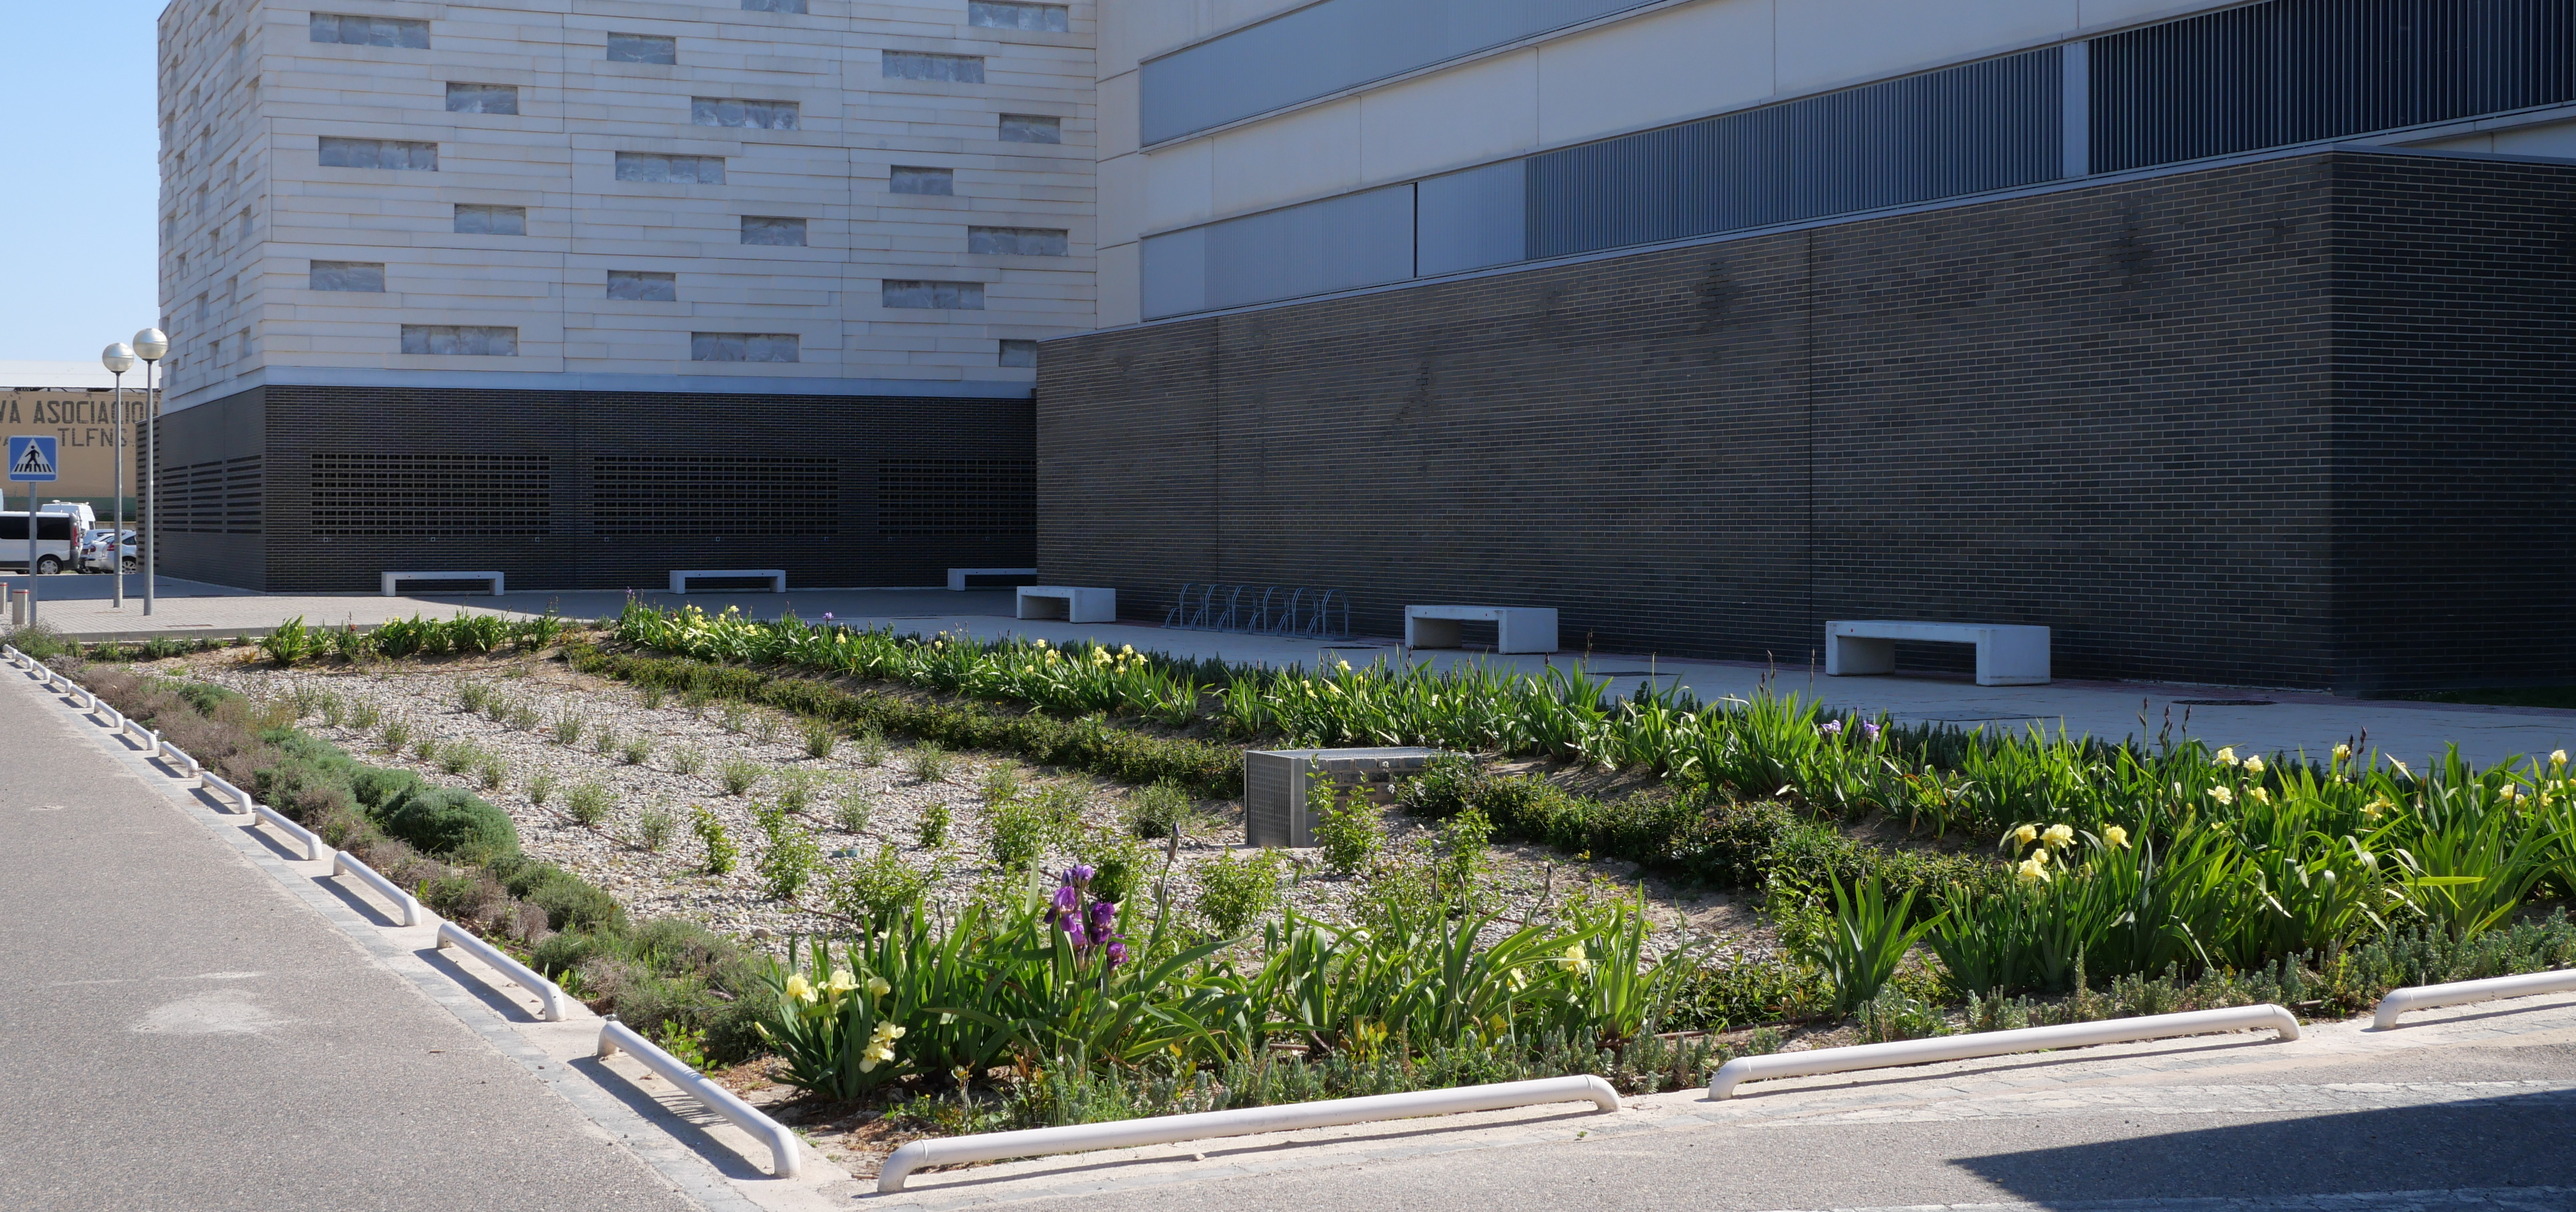 Fotografía exterior donde se ve un edificio y un jardín con plantas